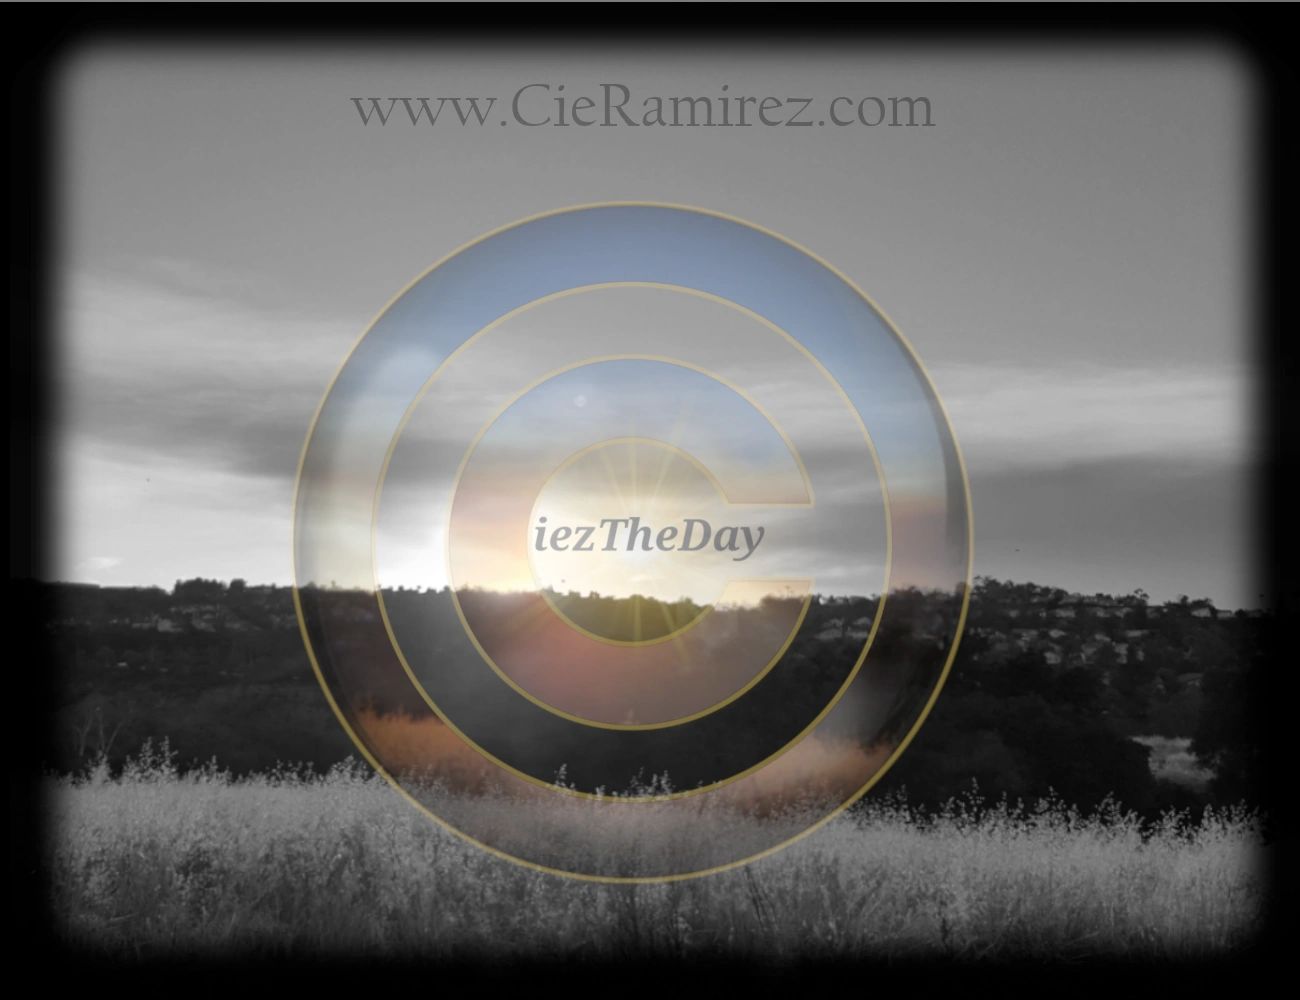 Cie Ramirez - Ciez The Day - Notary Public & Certified Loan Agent